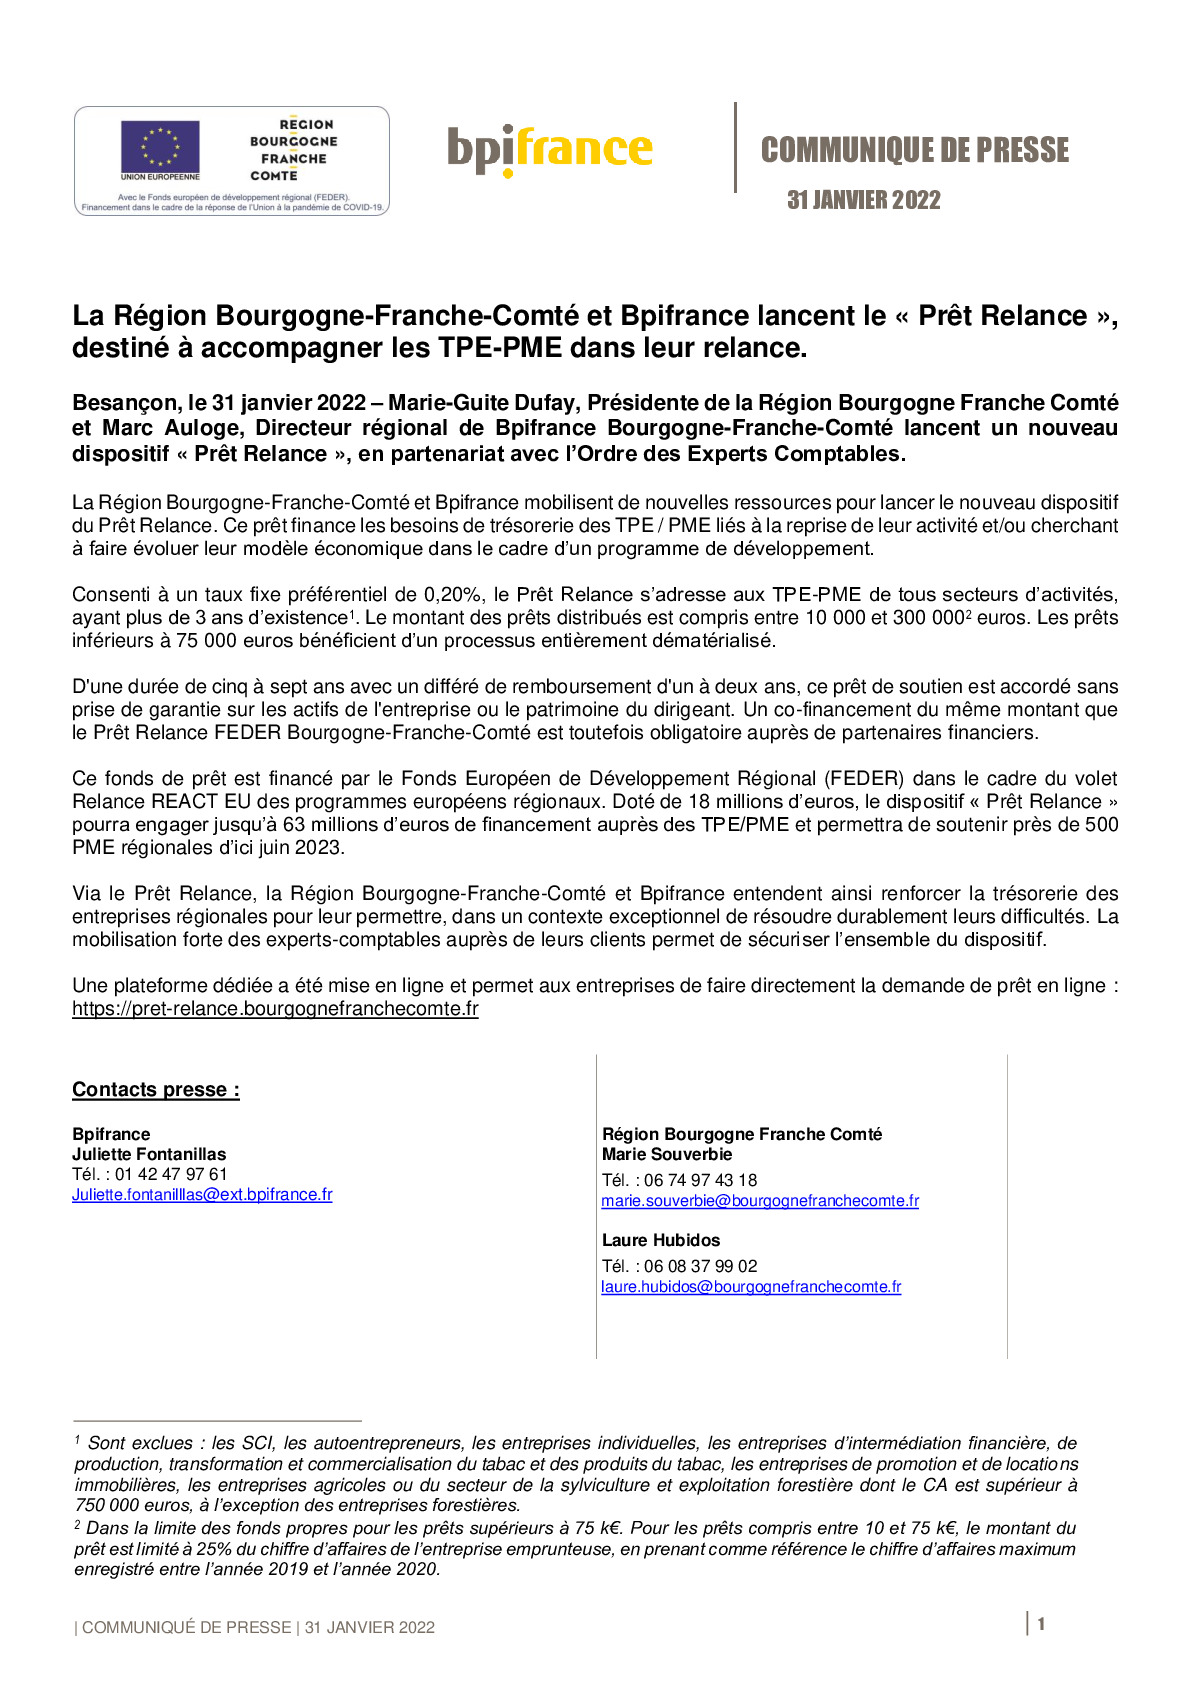 2022 01 31 – Bpifrance et la Region Bourgogne France Comte lancent le Pret Relance-pdf